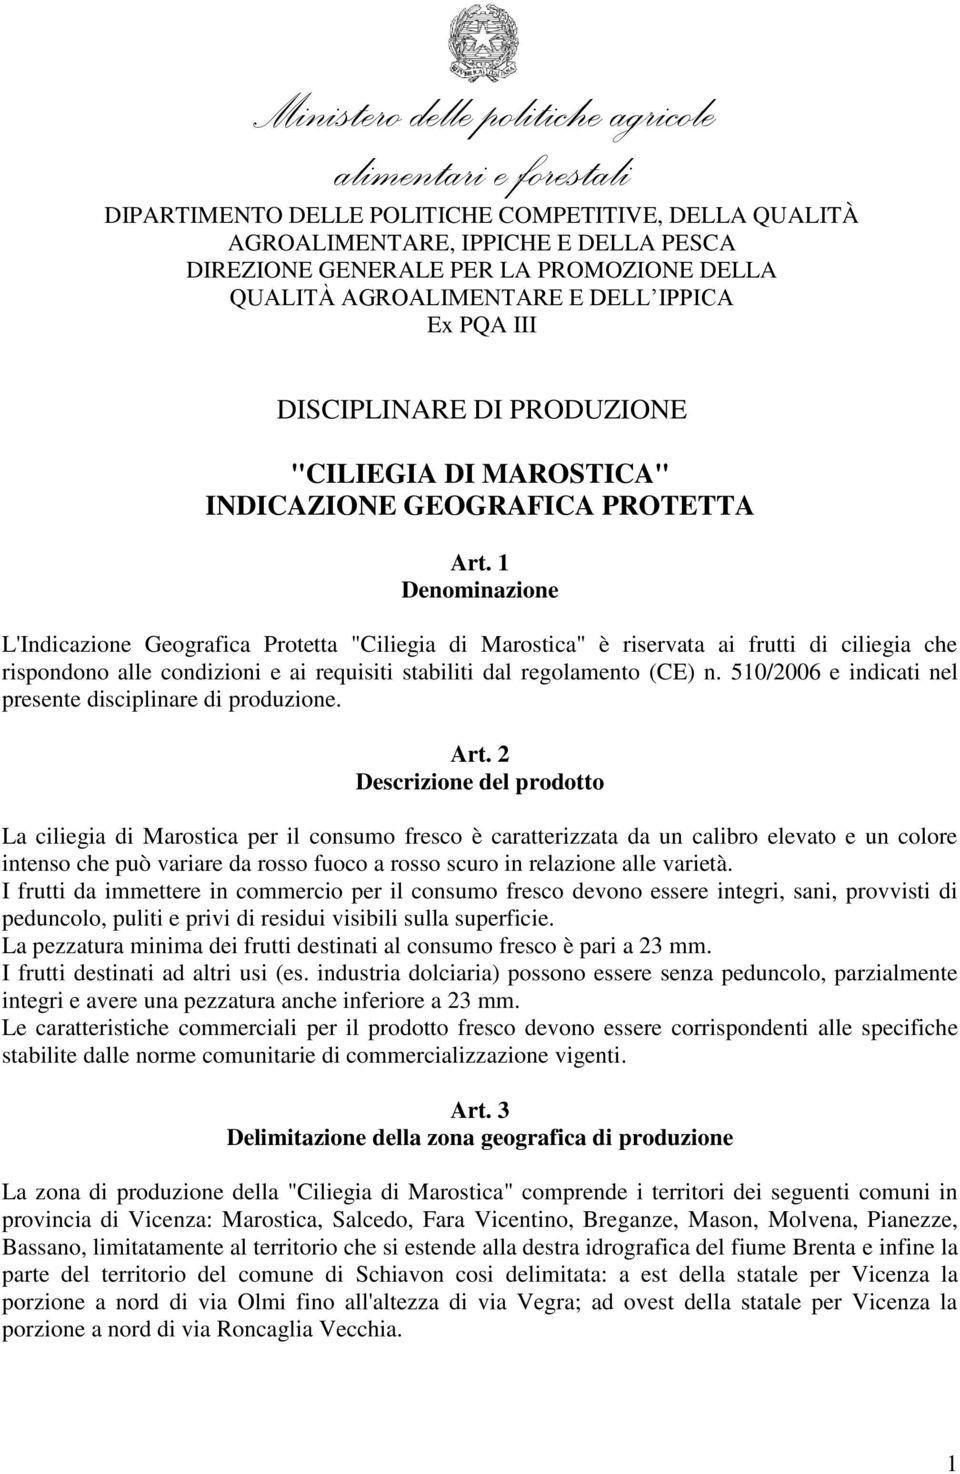 1 Denominazione L'Indicazione Geografica Protetta "Ciliegia di Marostica" è riservata ai frutti di ciliegia che rispondono alle condizioni e ai requisiti stabiliti dal regolamento (CE) n.